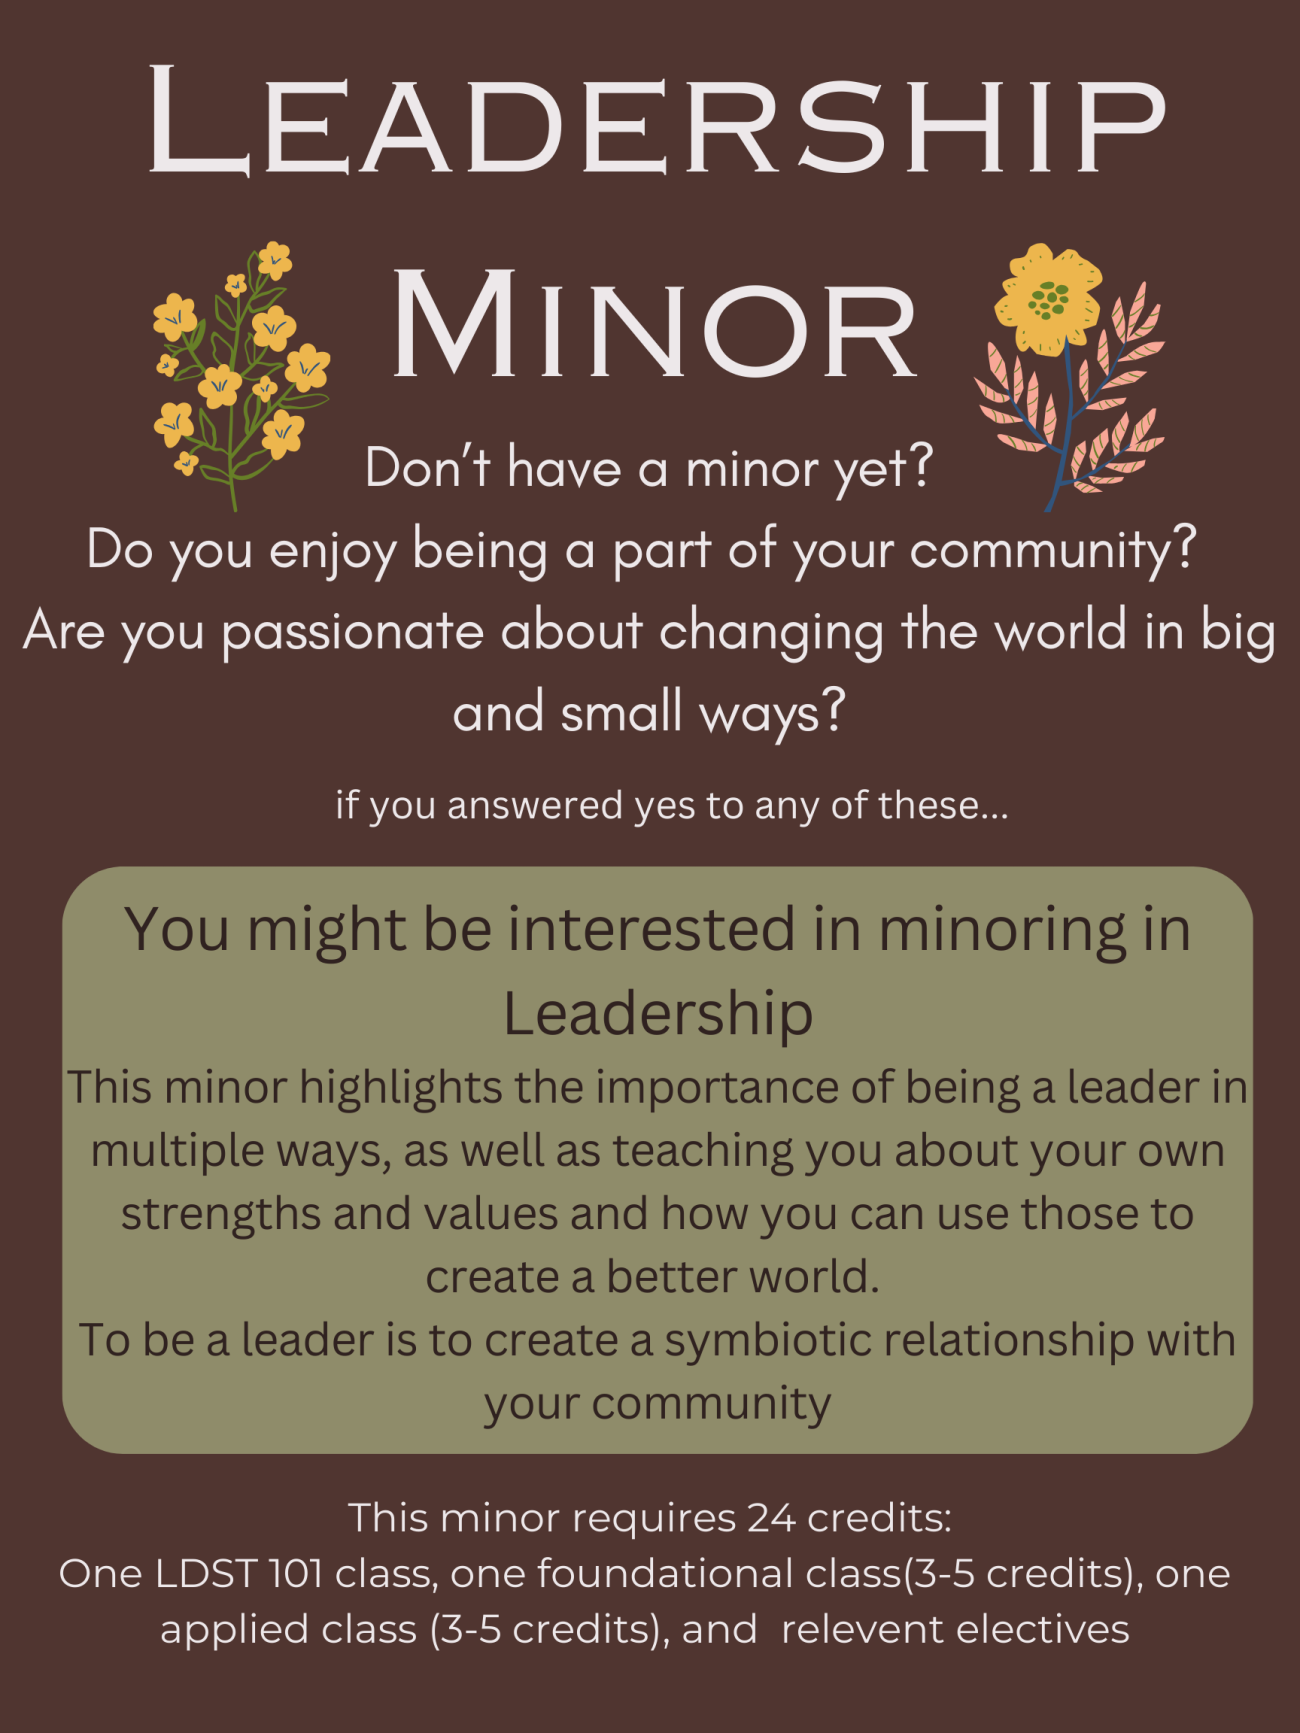 Image describing the Leadership Minor